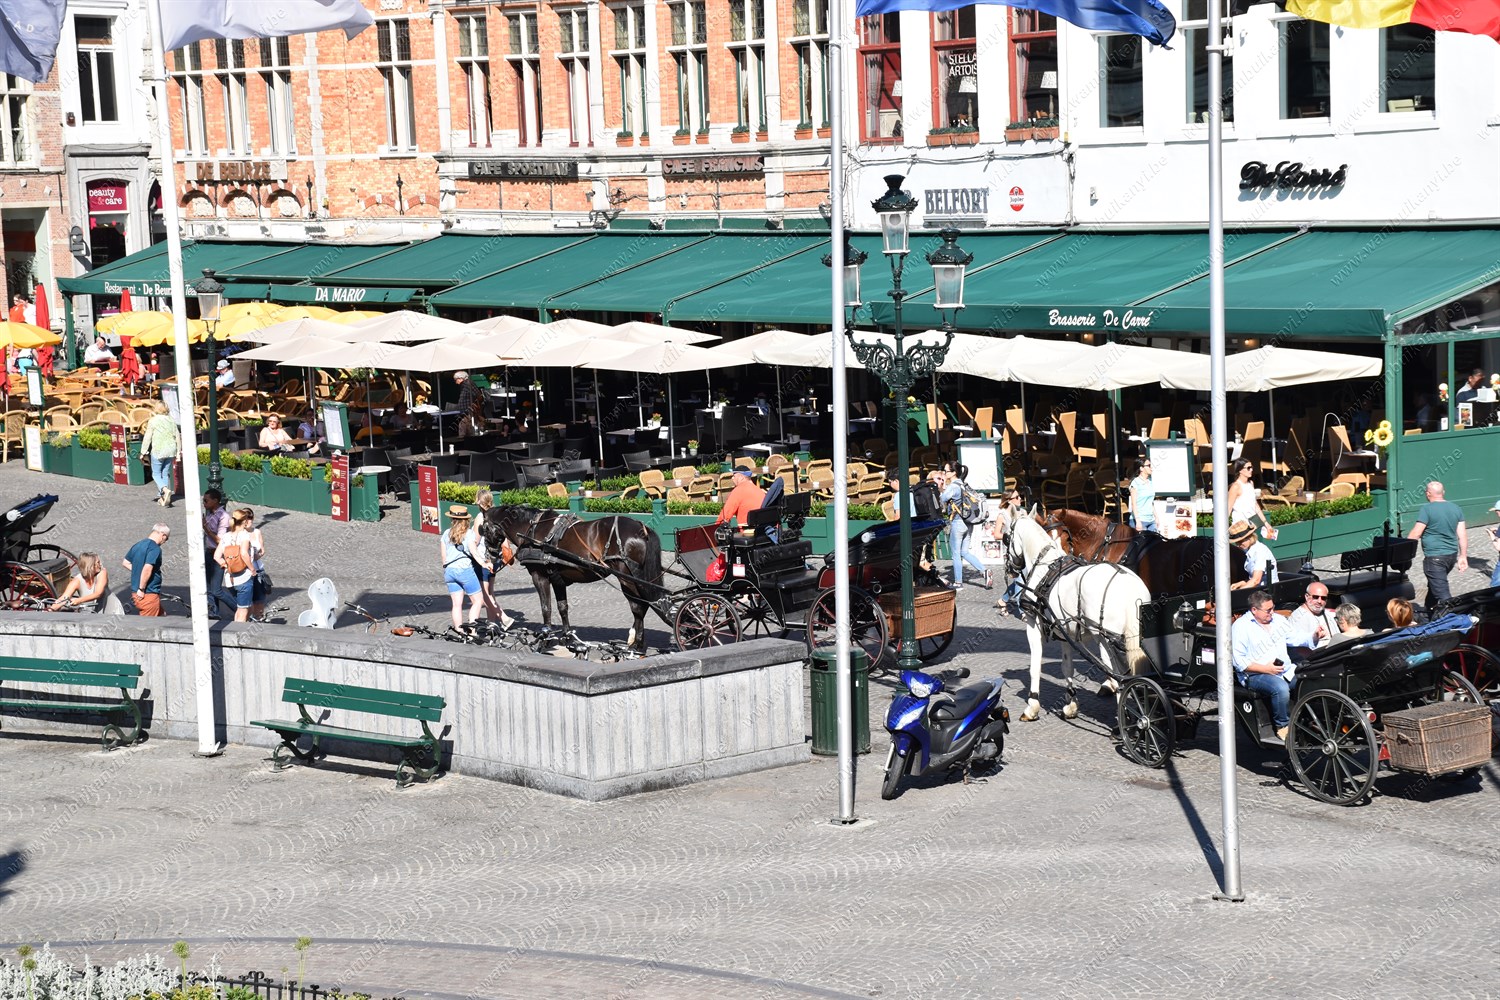 The market square in Bruges